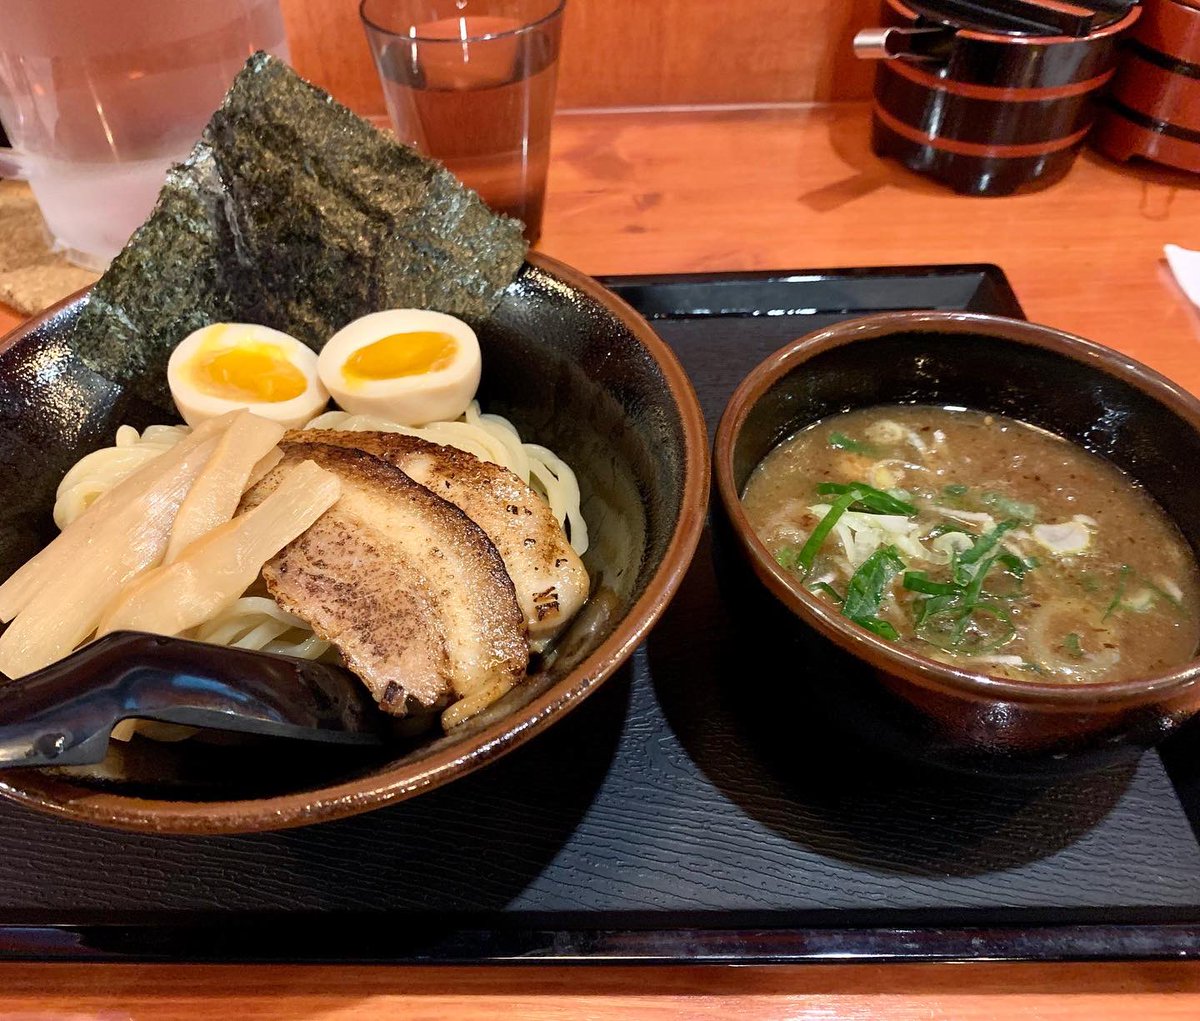 気になっていたラーメン店に立ち寄ってみた🍜 ソウルで日本式つけ麺食べるのは、初めてかも。 極太麺と魚介系スープがよく合い、結構美味しかった😋 単純なので、これであと1年くらい帰国せずとも生きて